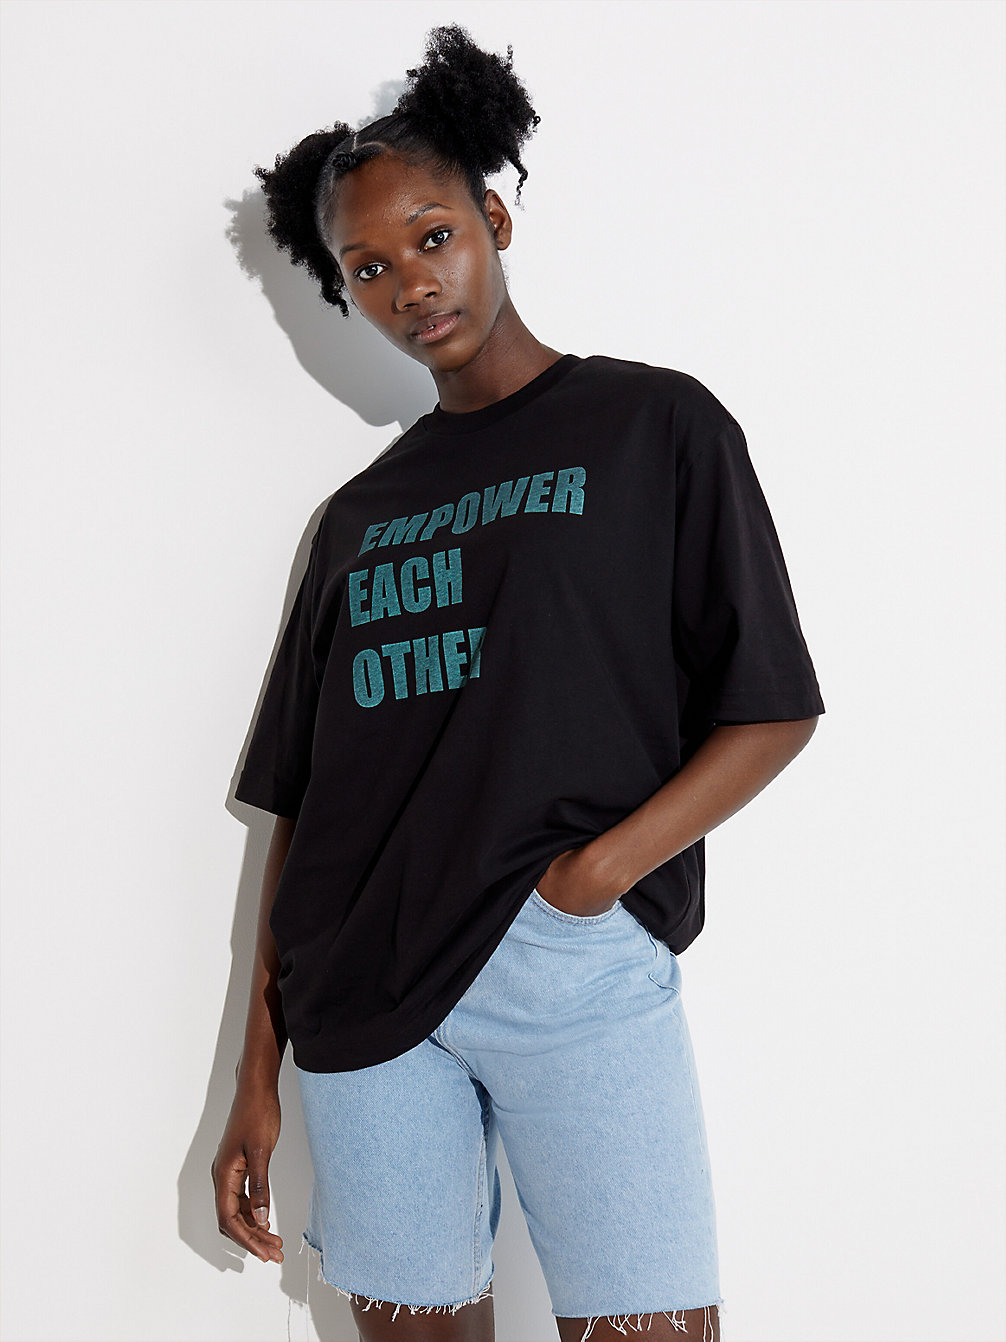 CK BLACK Unisex Oversized Printed T-Shirt - Pride undefined unisex Calvin Klein